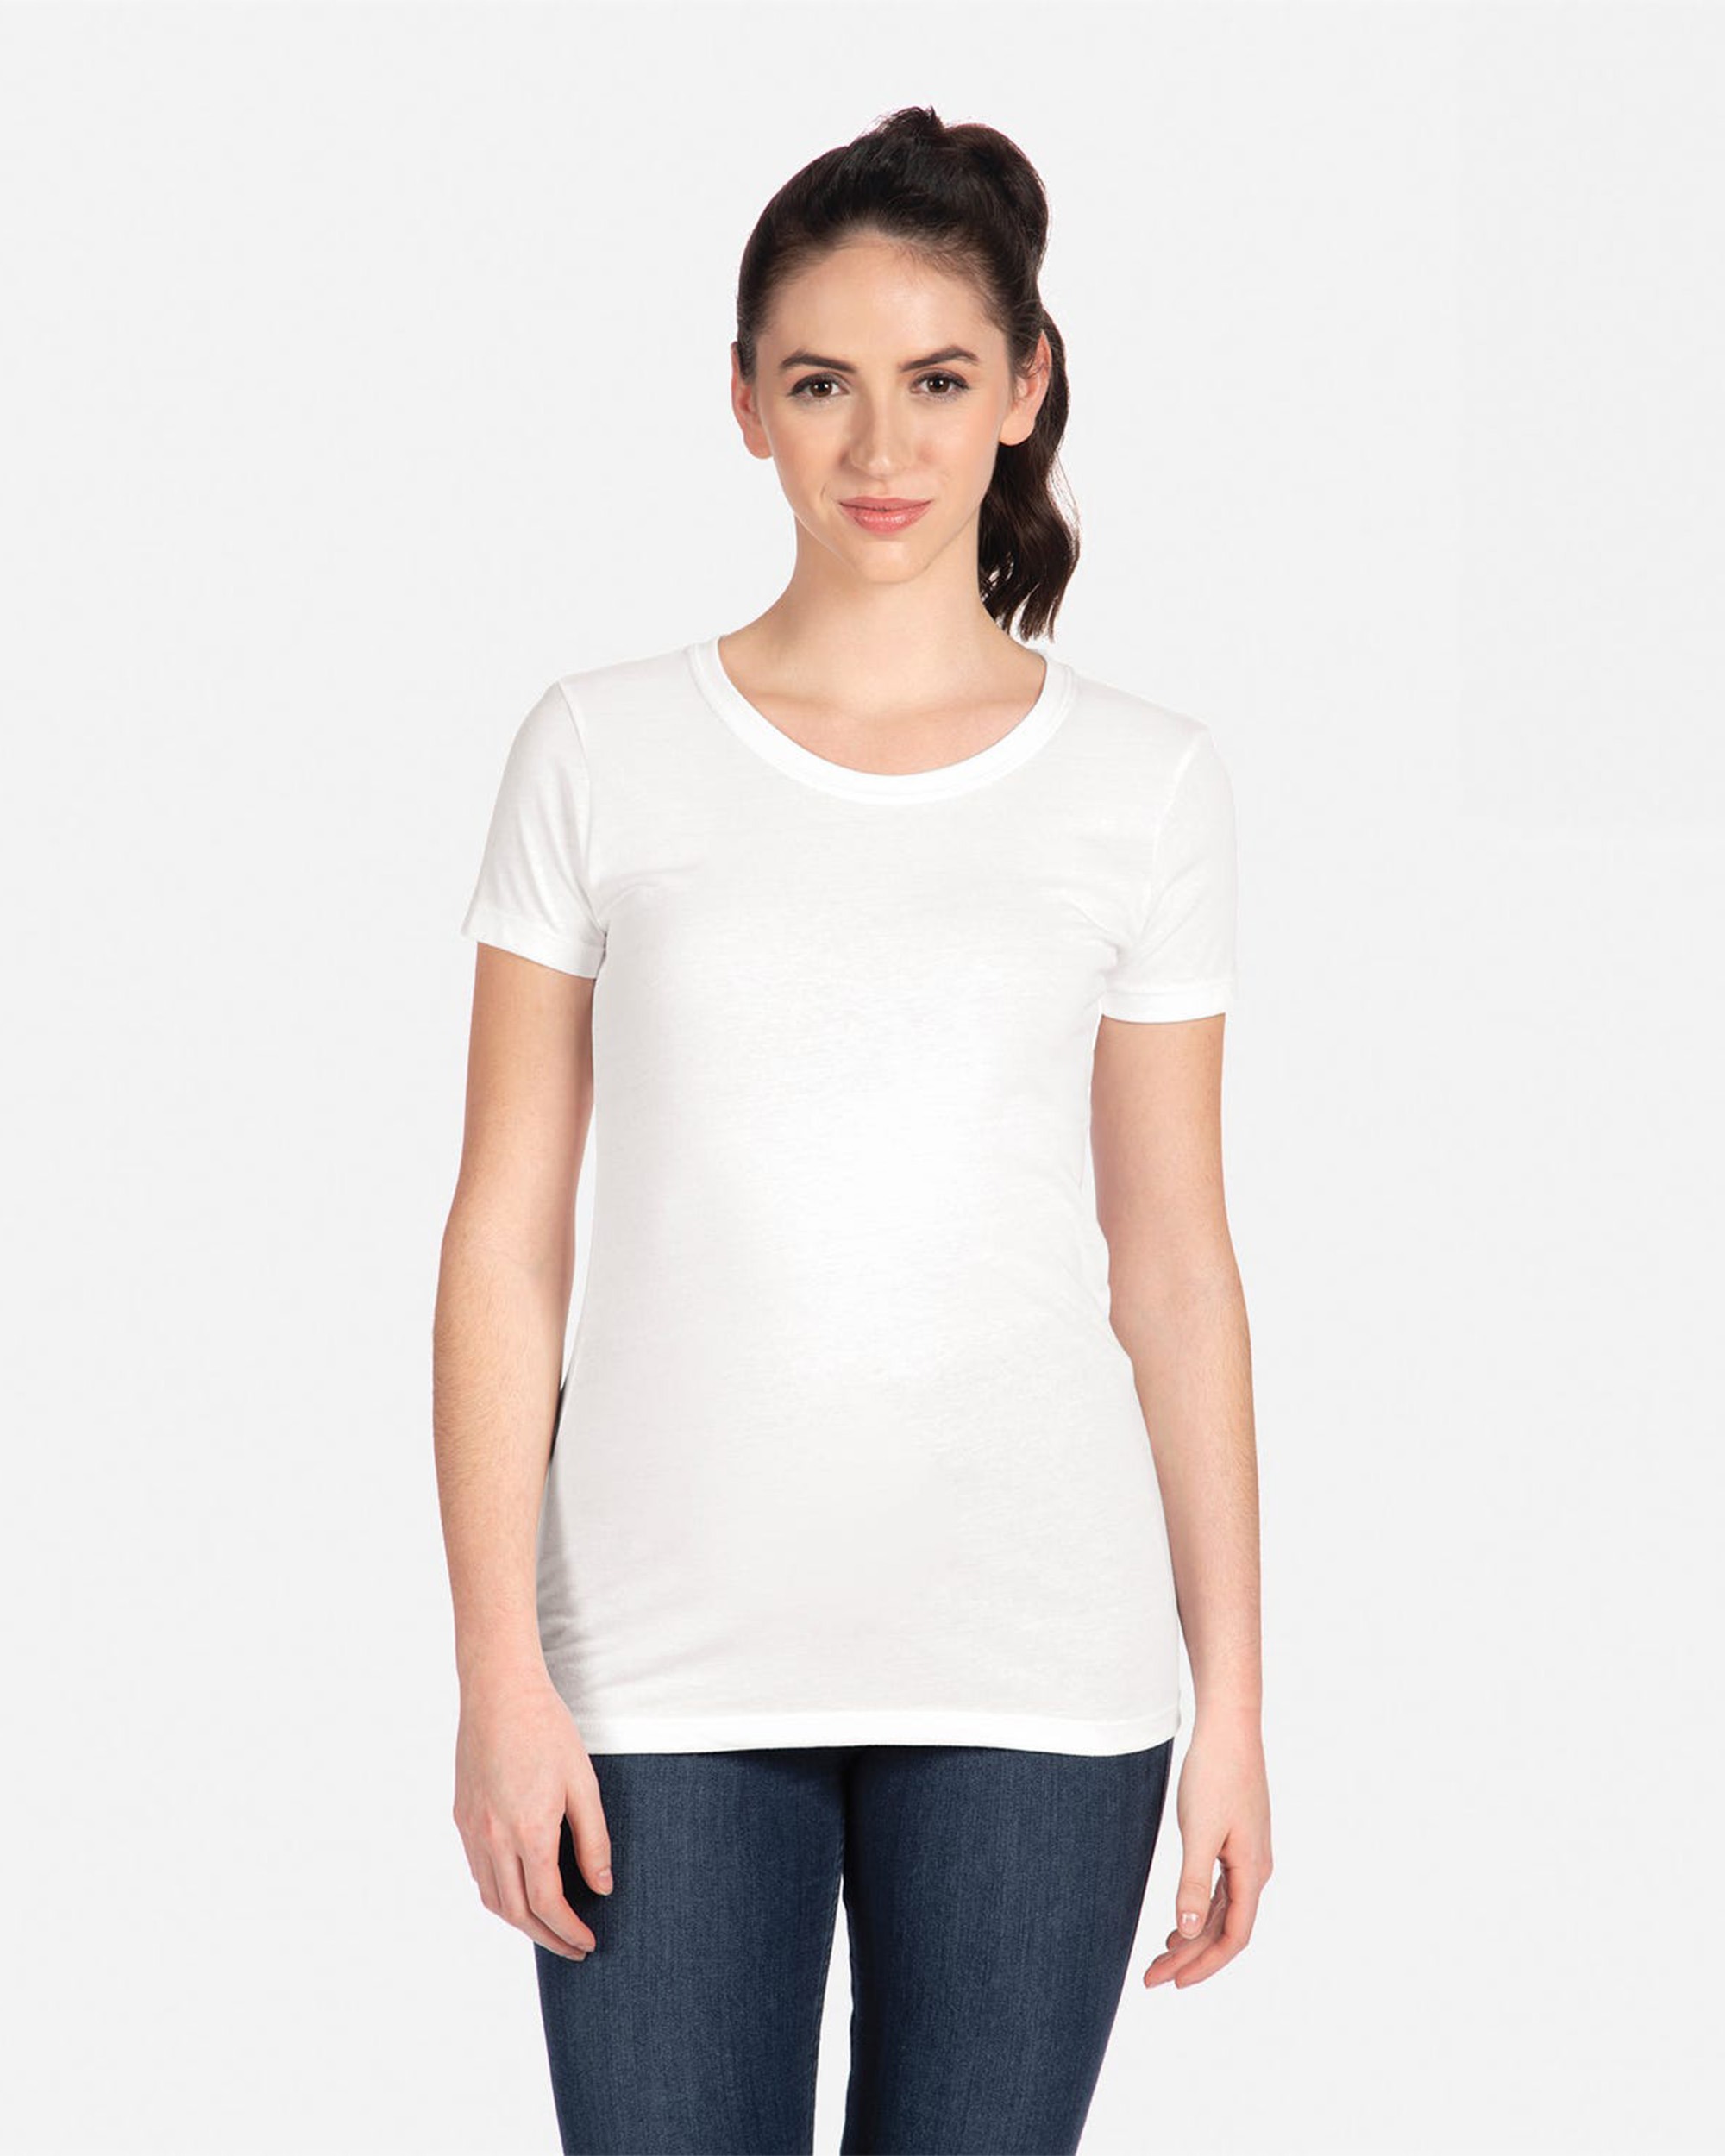 Next Level Apparel® 1510 Women's Ideal T-Shirt